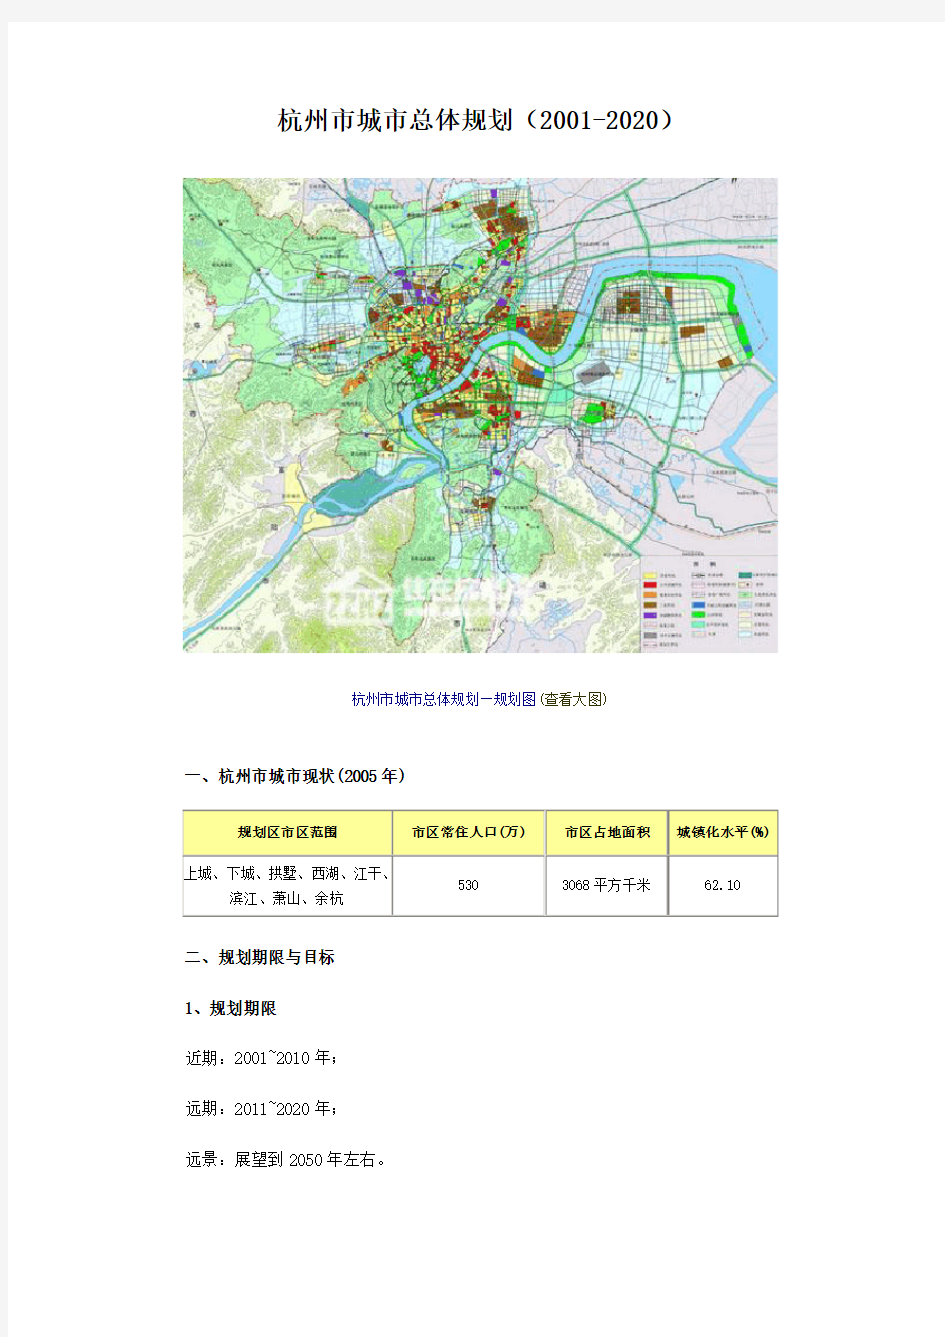 杭州市城市总体规划(2001-2020)